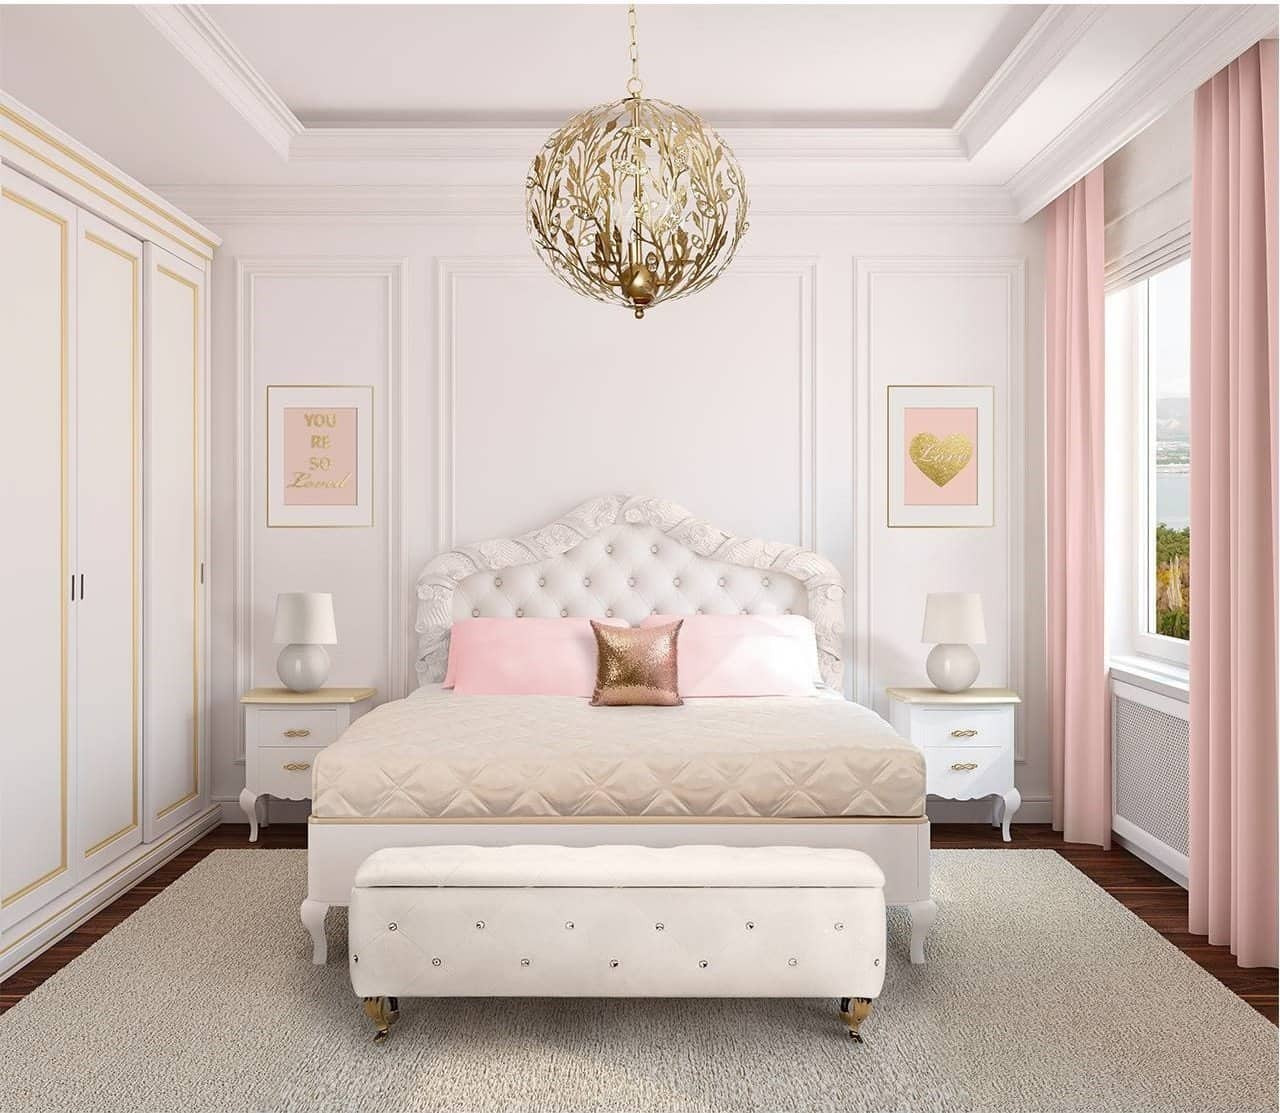 Light Fixtures For Girl Bedroom
 Romantic bedroom lighting ideas